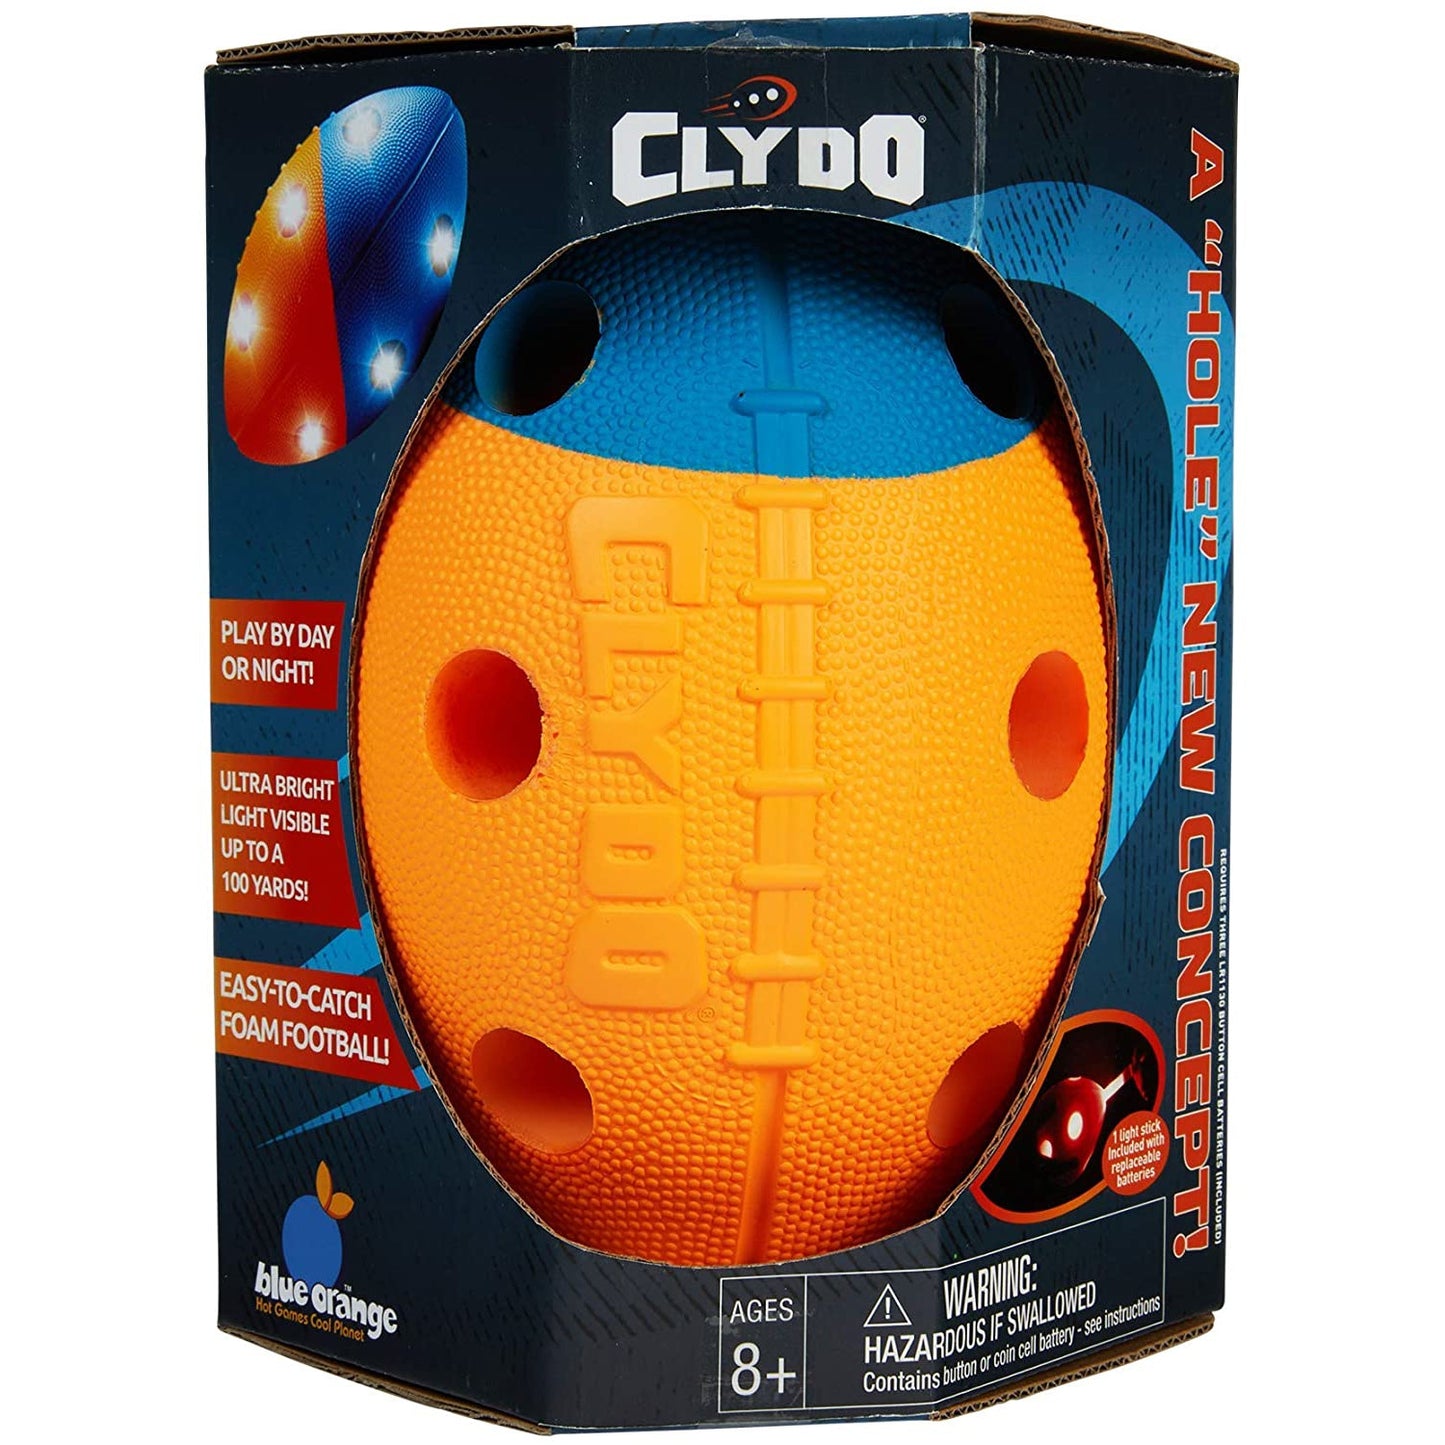 Clydo Football Lightup 2